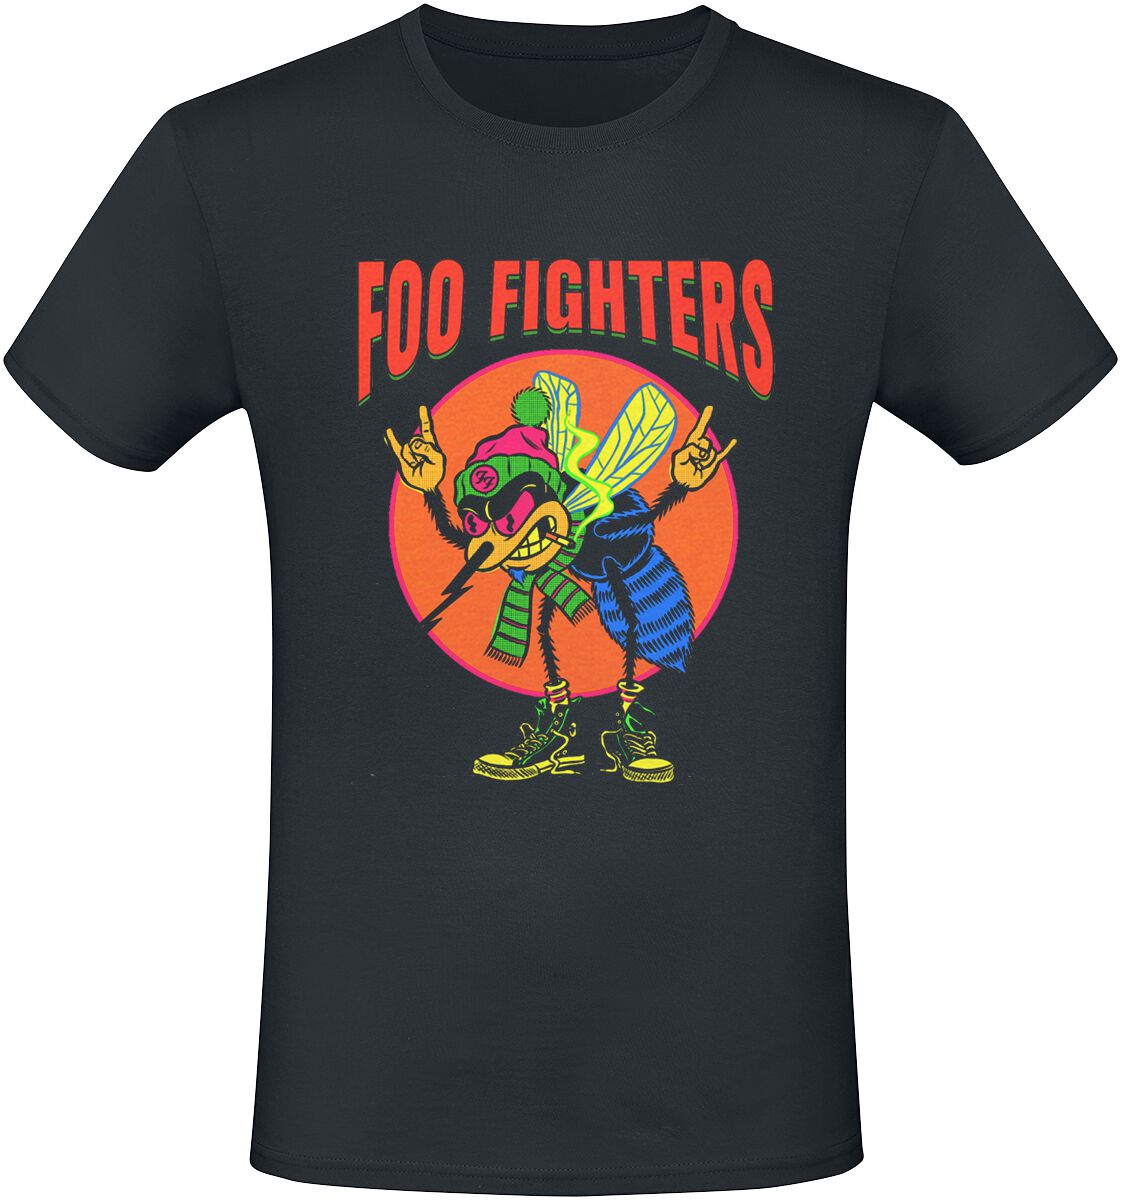 Foo Fighters T-Shirt - Mosquito - S bis 3XL - für Männer - Größe XL - schwarz  - Lizenziertes Merchandise!